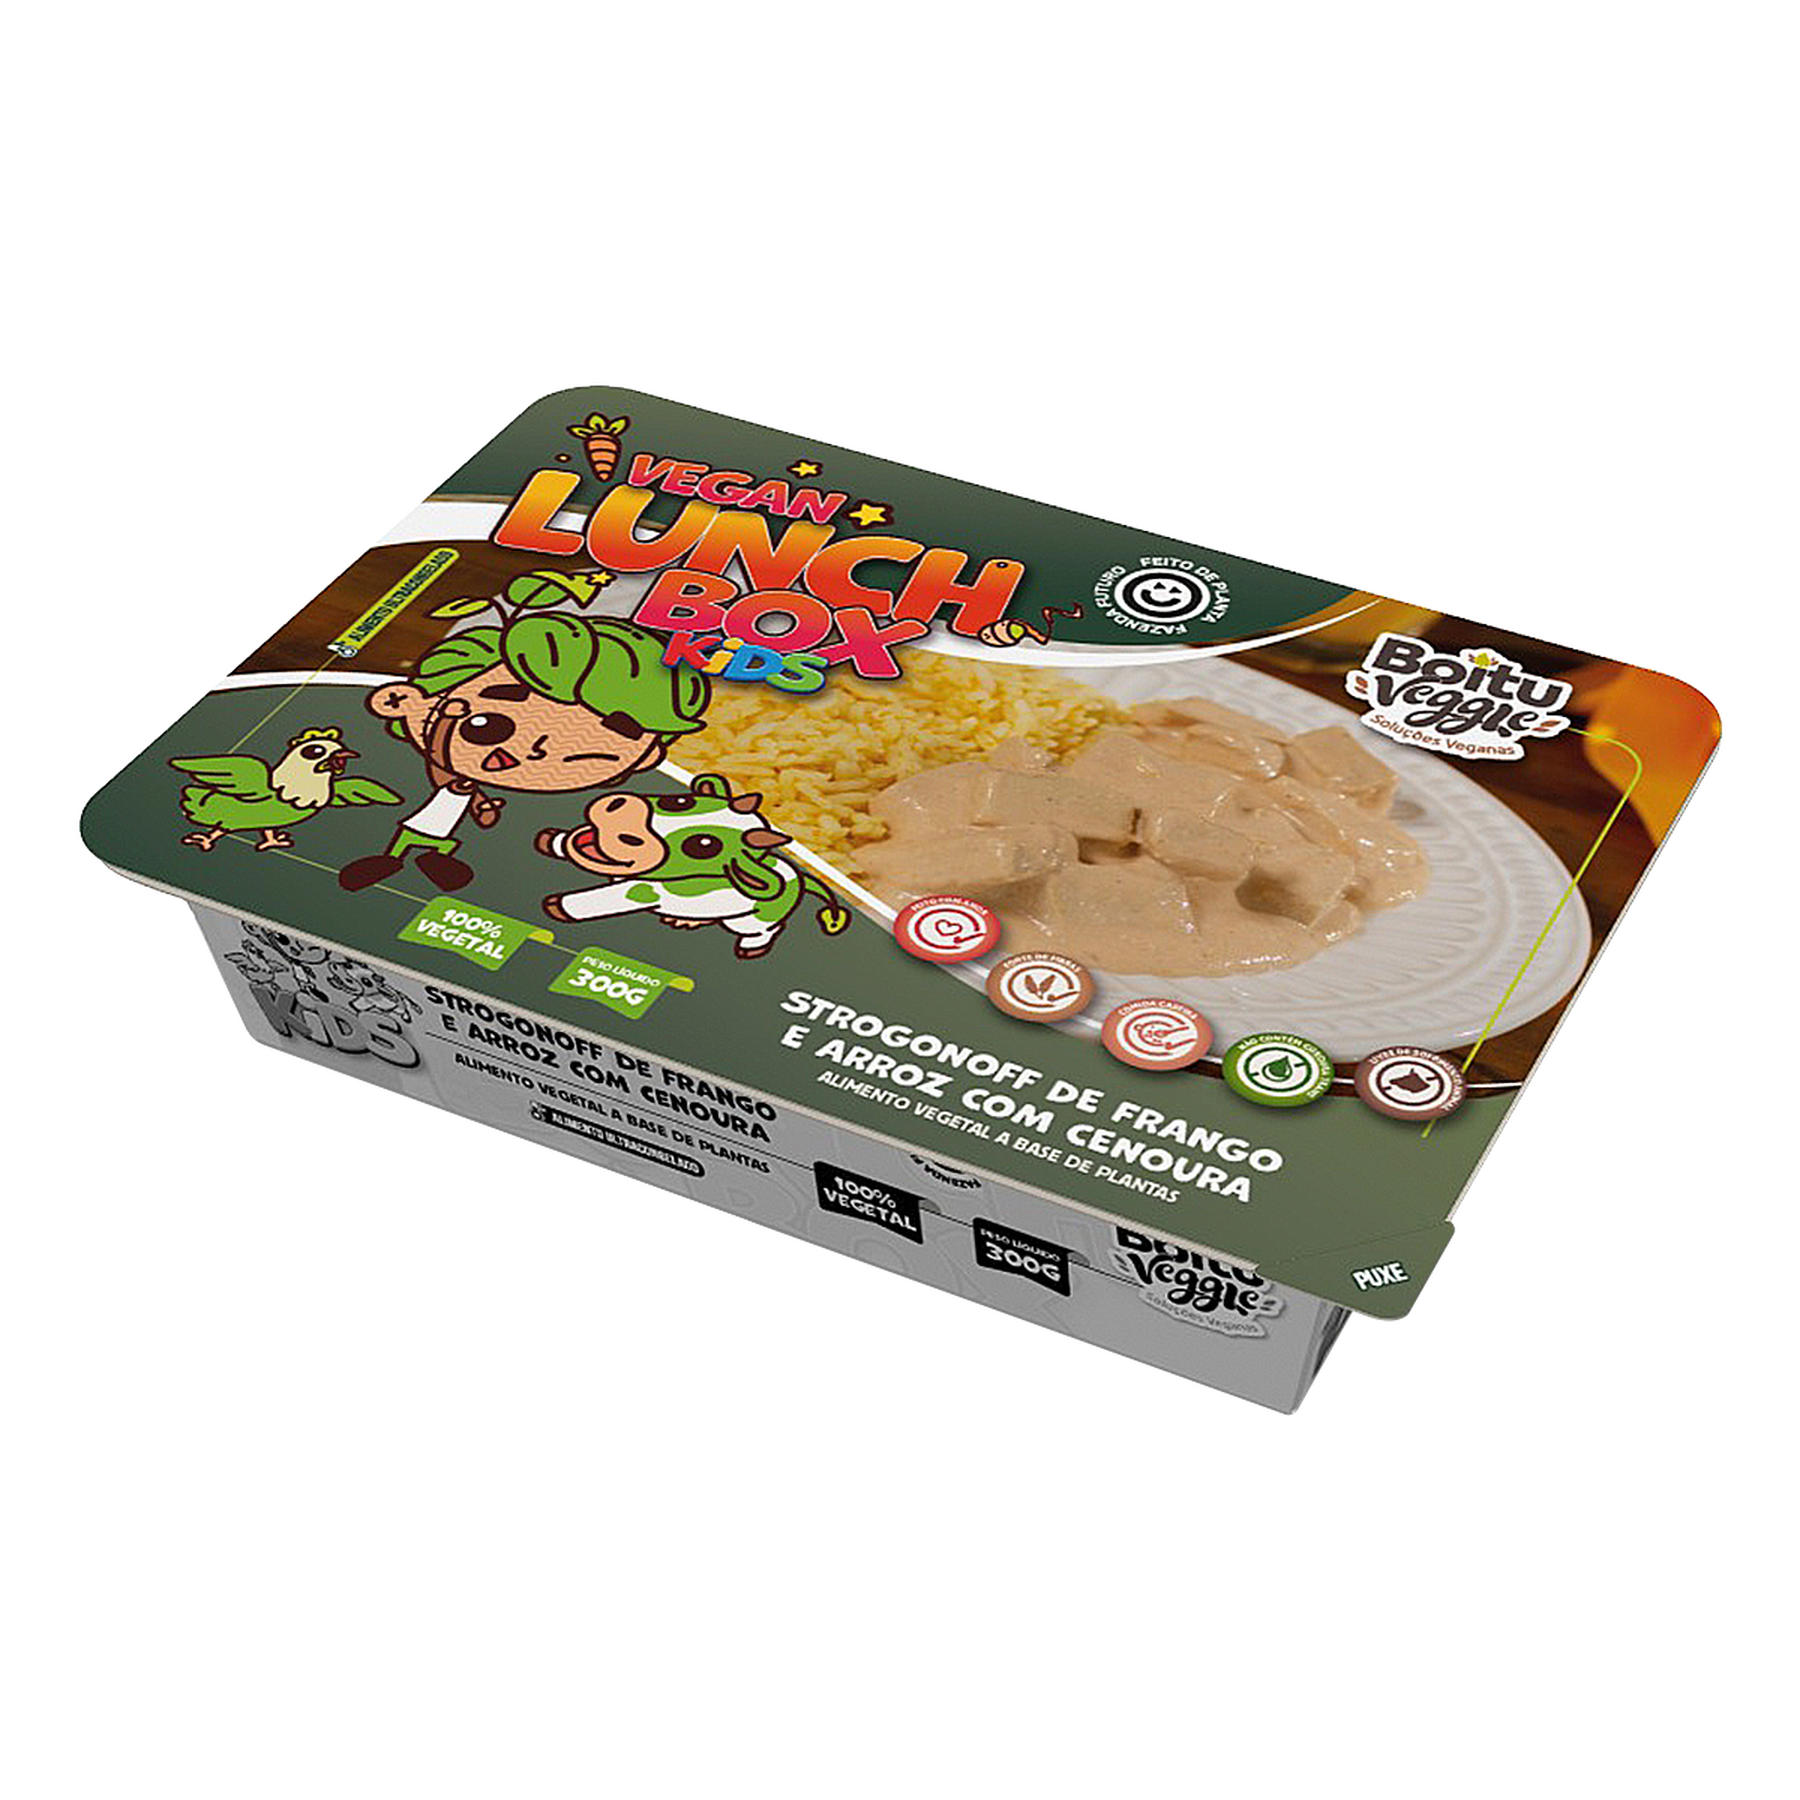 Strogonoff de Frango e Arroz com Cenoura Vegan Lunch Box Kids Boitu Veggie Caixa 300g